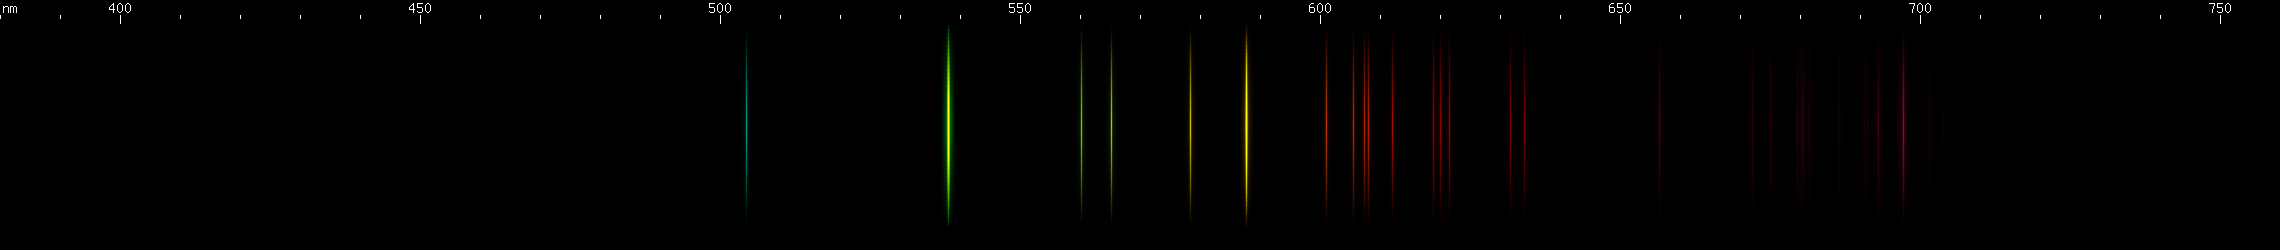 Spectral lines of Neptunium.